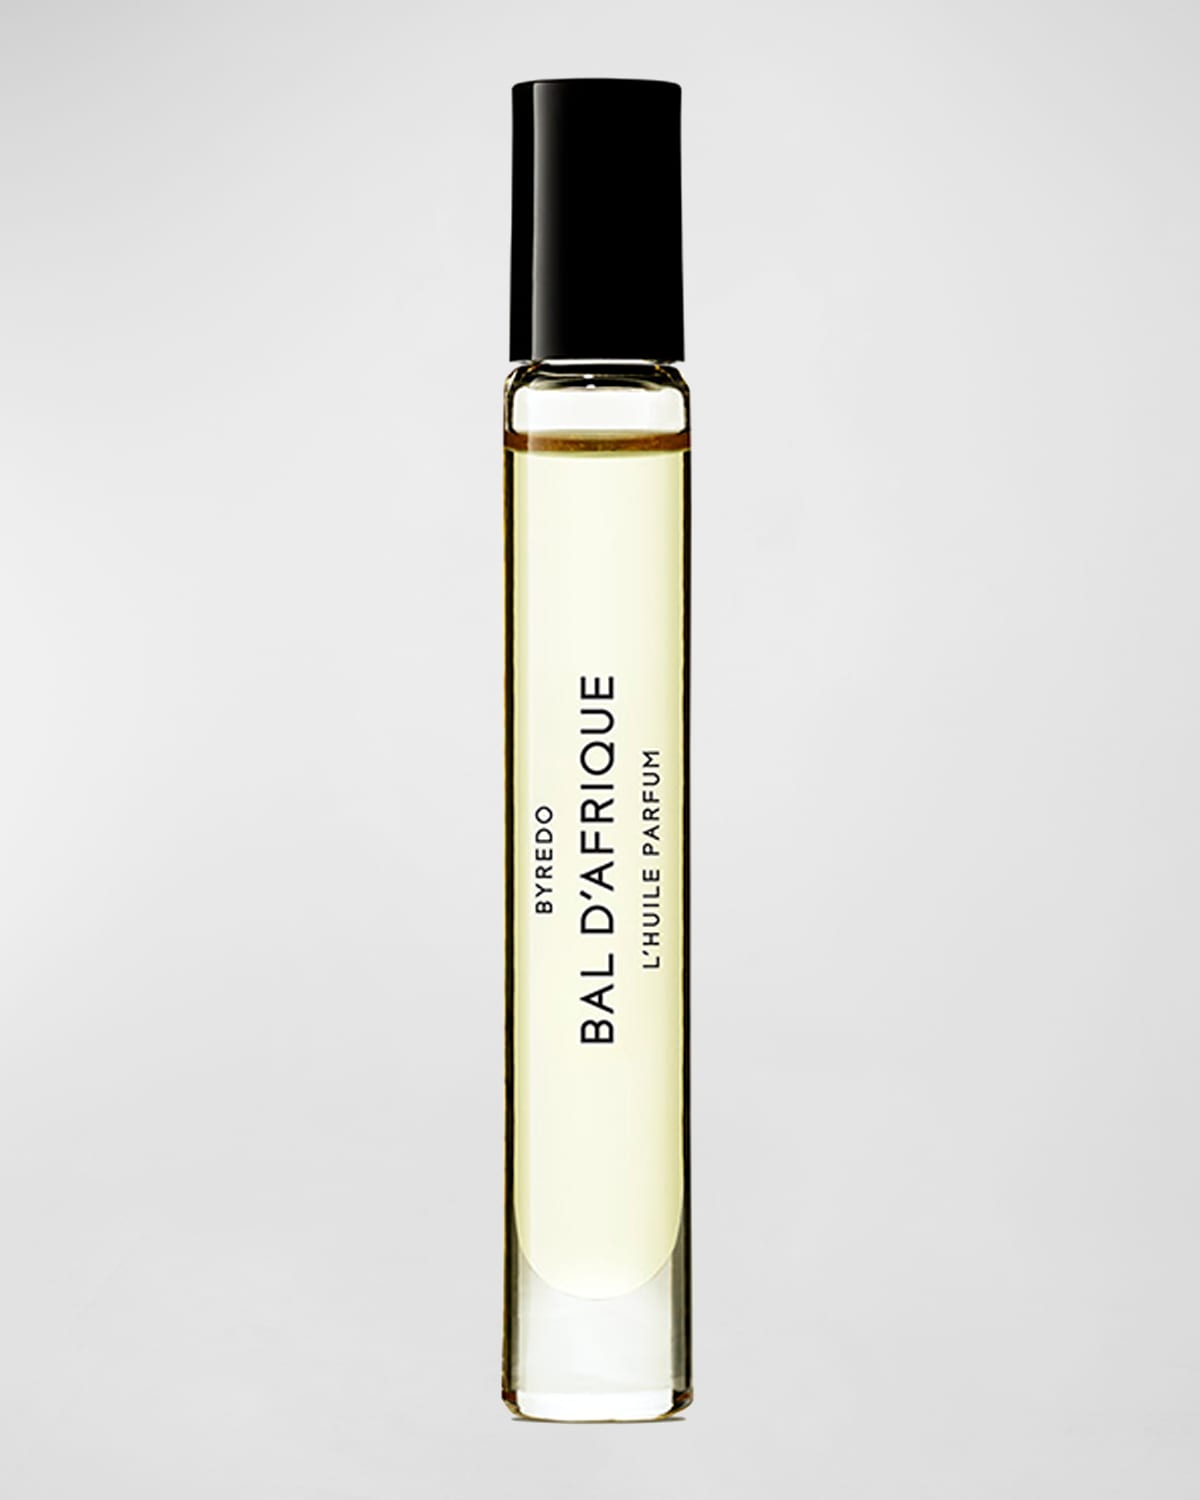 0.25 oz. Bal d'Afrique L'Huile Parfum Oil Roll-On | Neiman Marcus